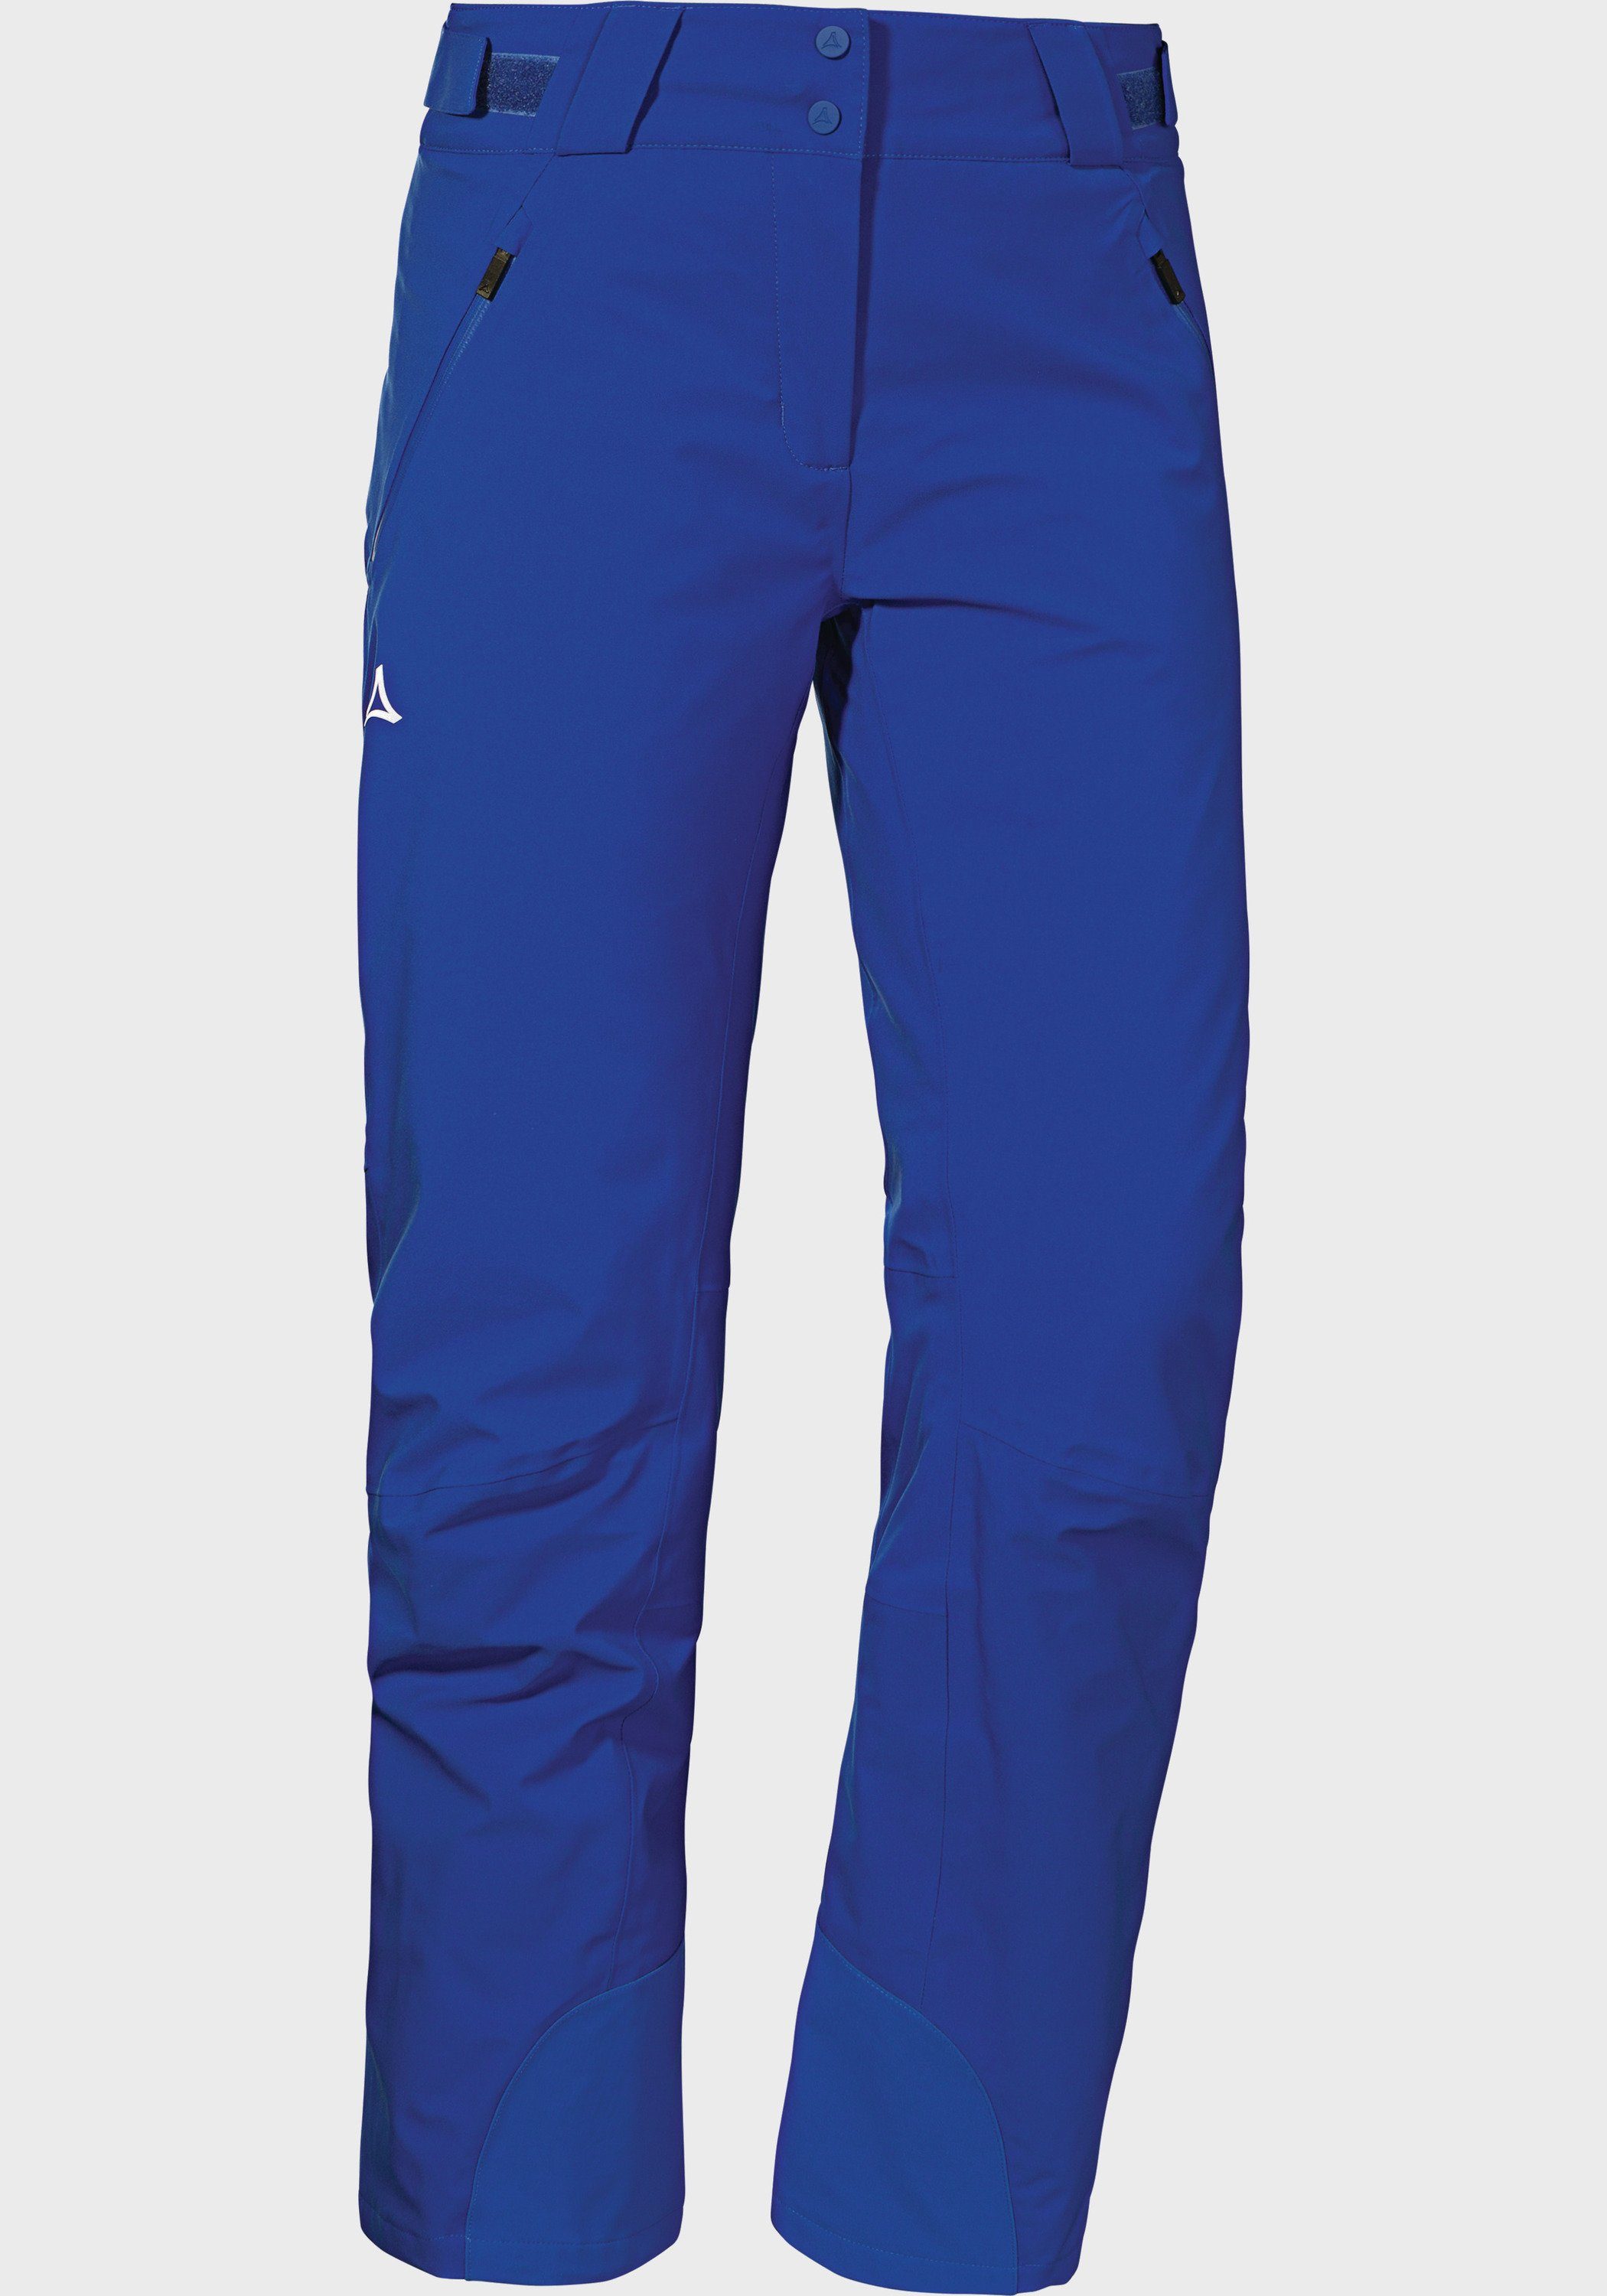 L Schöffel Weissach blau Pants Outdoorhose Ski